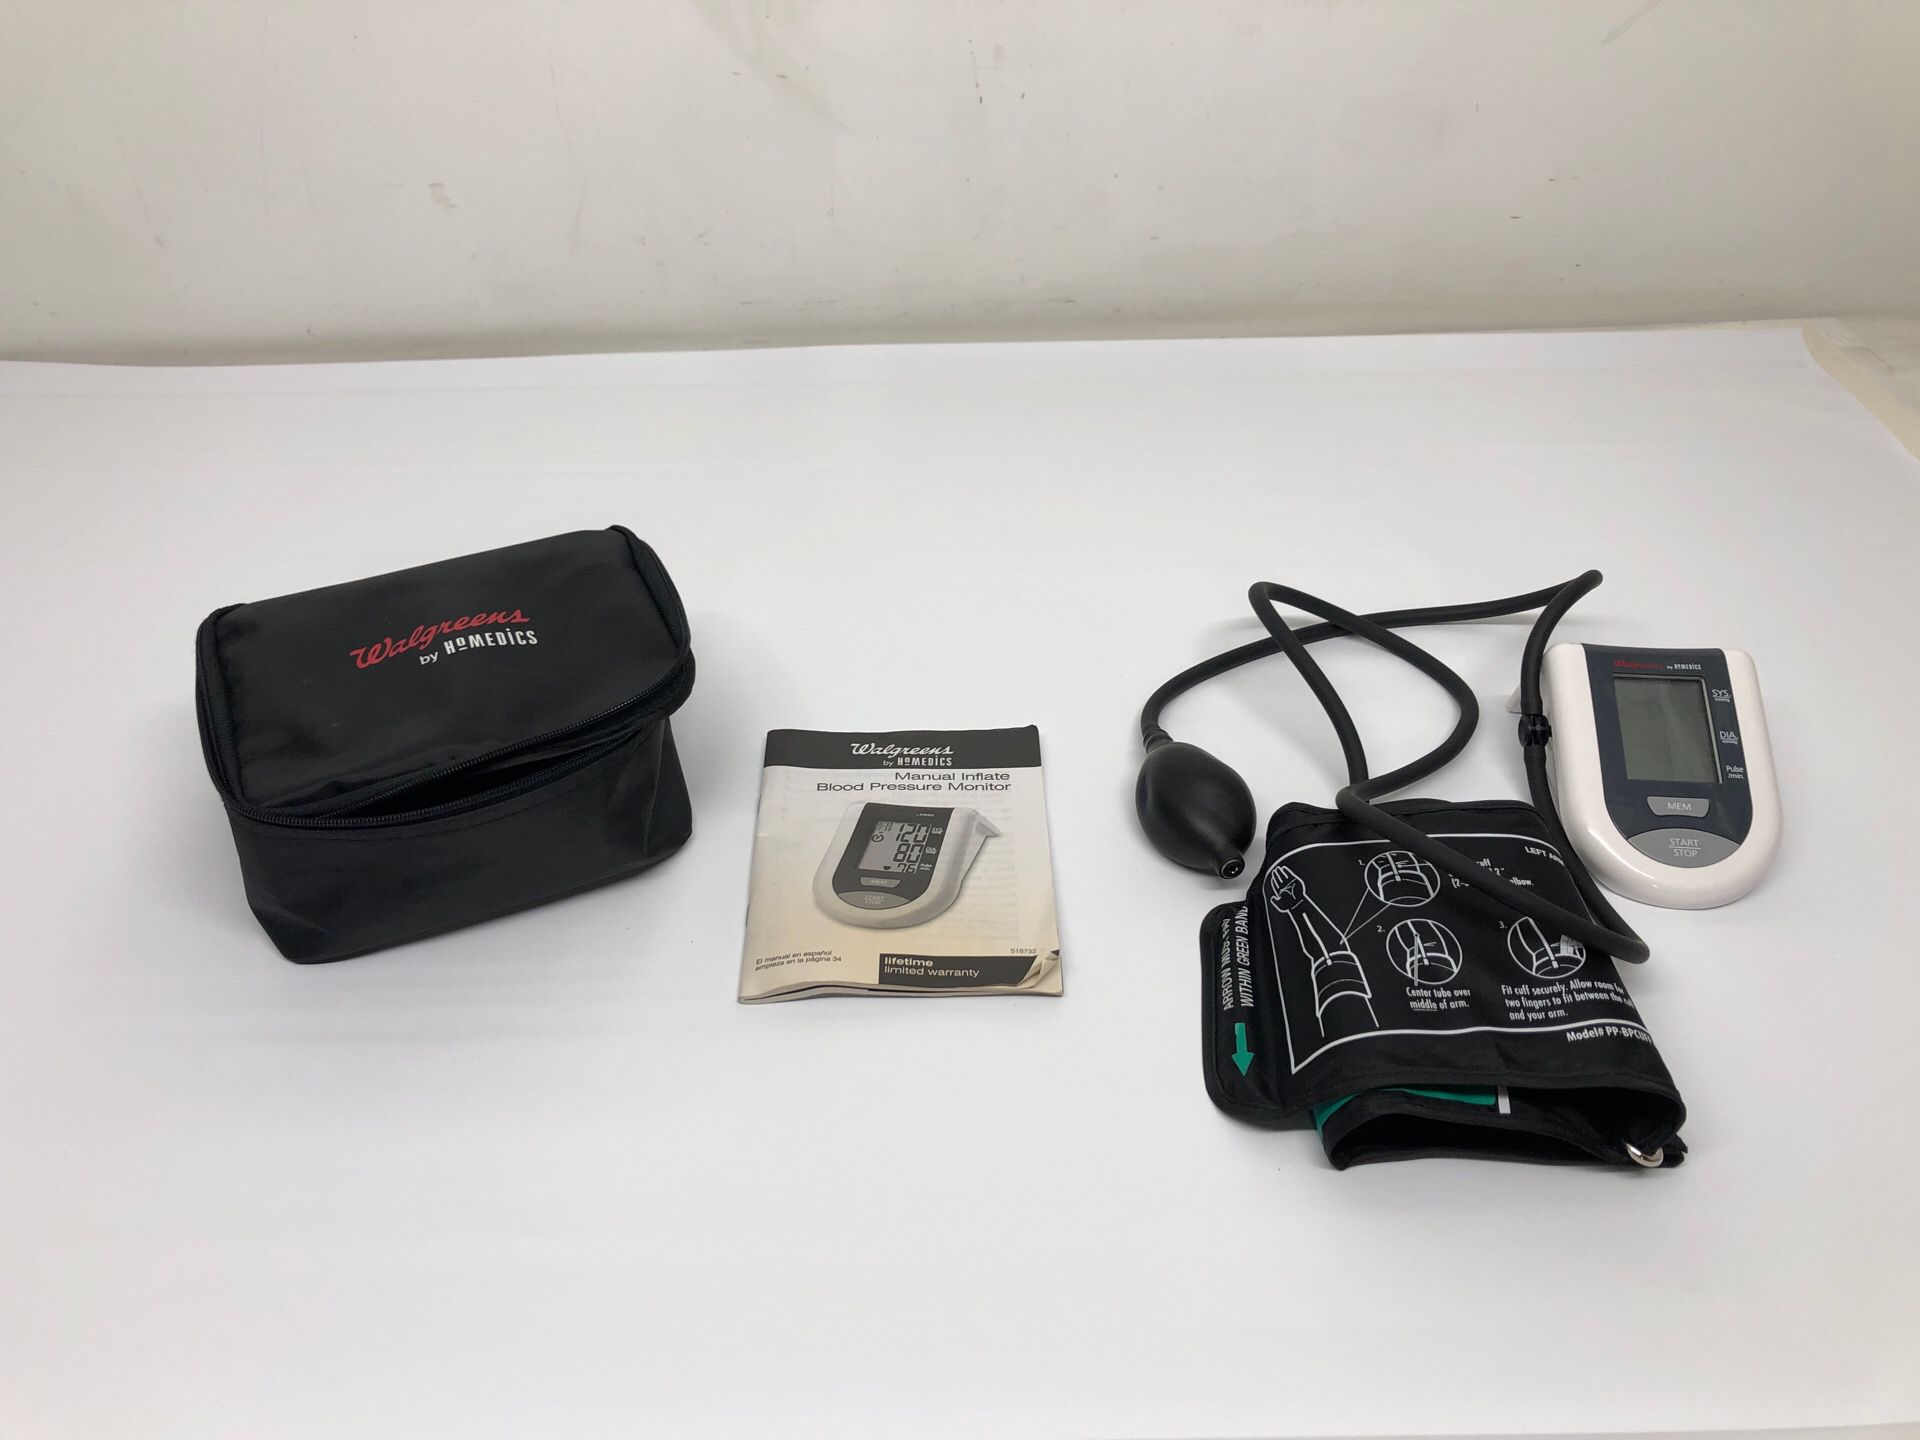 Qardioarm Wireless Blood Pressure Monitor for Sale in Montebello, CA -  OfferUp